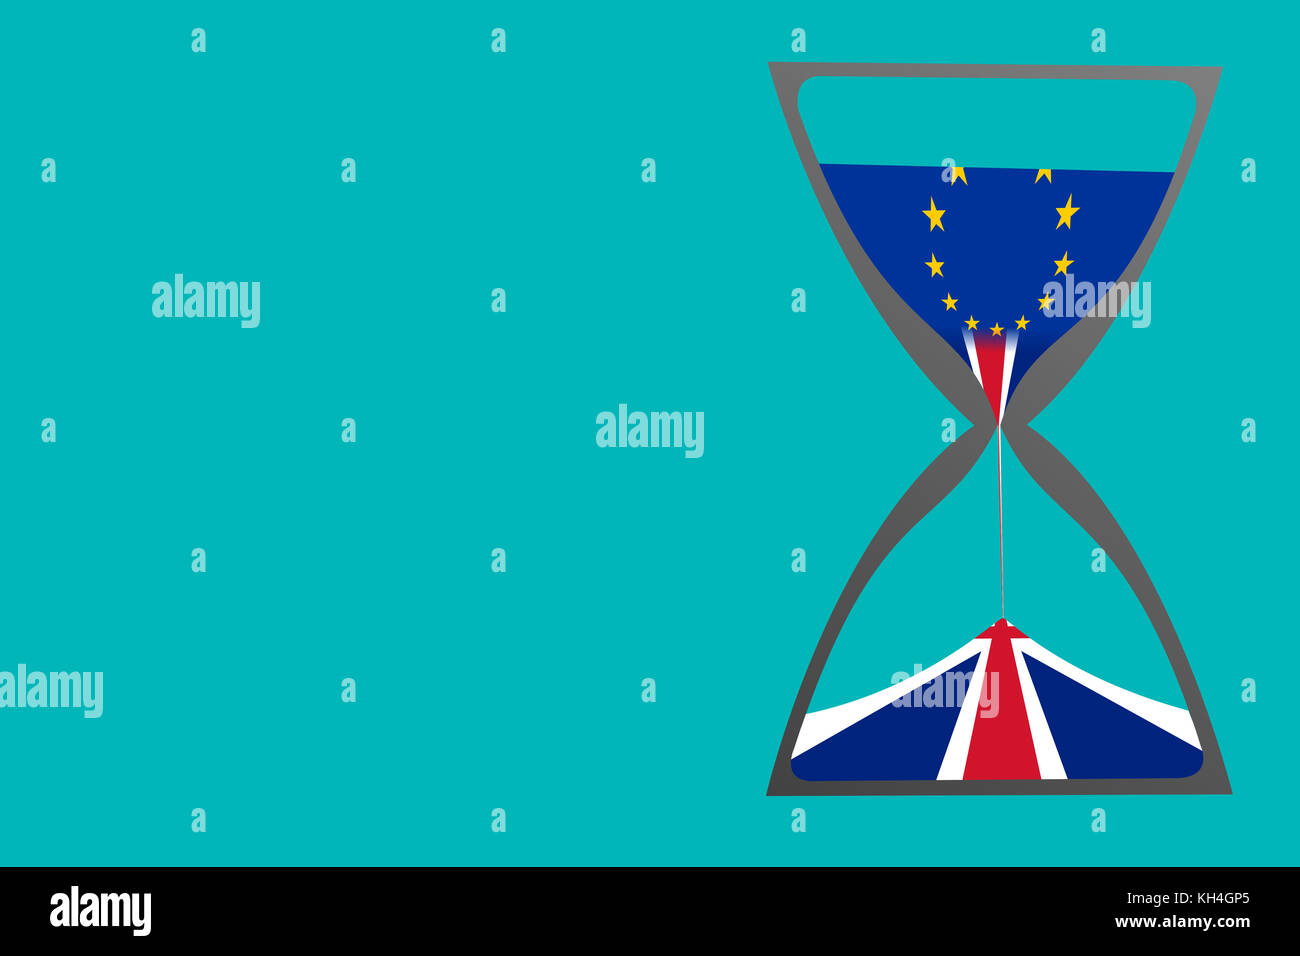 Un concepto de brexit como muestra una ilustración de un reloj de arena con la bandera de la Unión Europea como la parte superior de la arena y la bandera del Reino Unido hacia abajo. Foto de stock